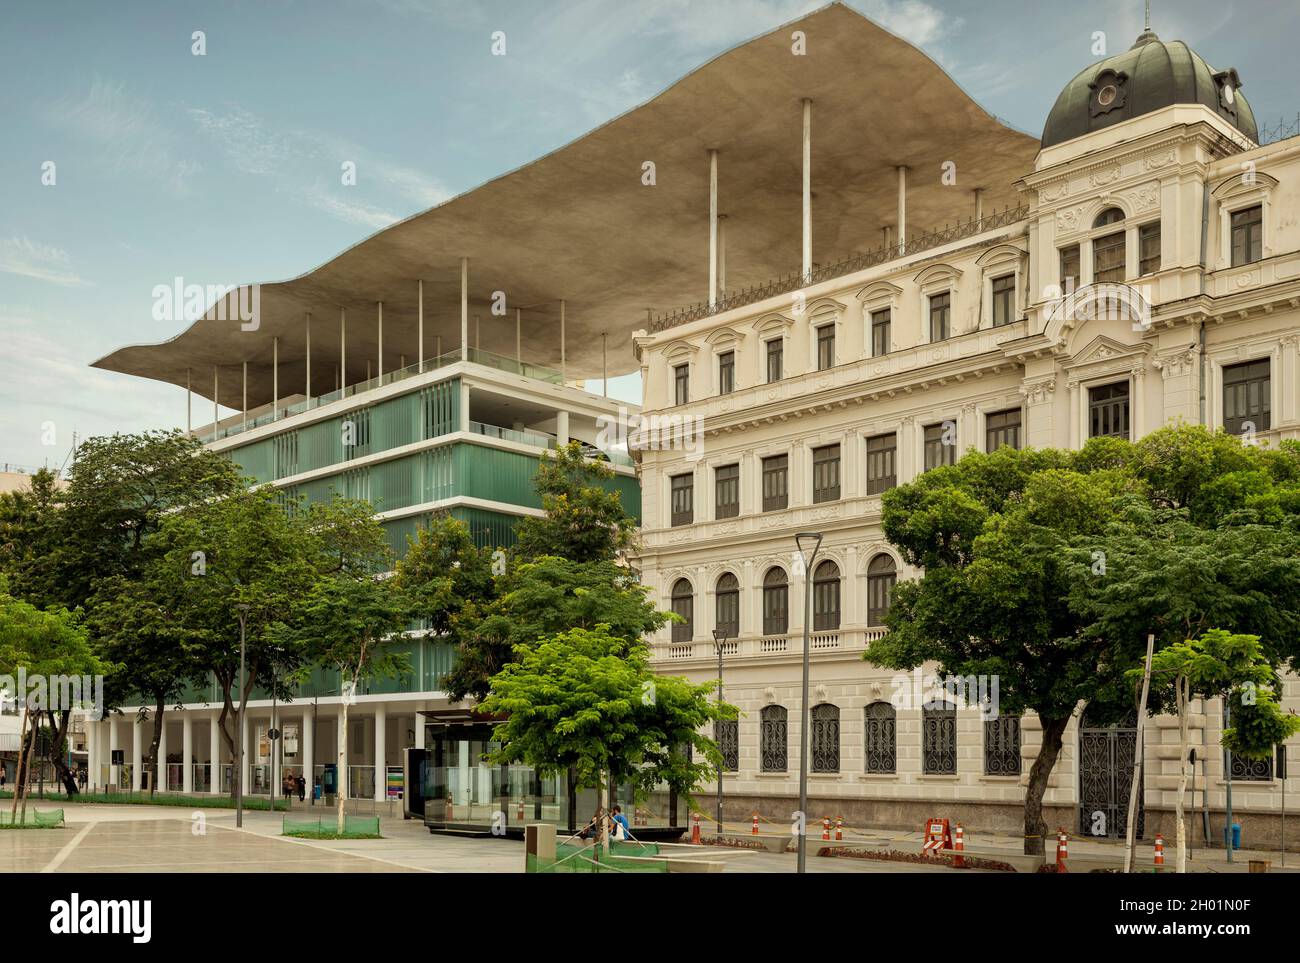 Rio de Janeiro, Brésil - vers décembre 2017: MAR (Museo de Arte de Río) Musée d'art du centre-ville de Rio de Janeiro, Brésil Banque D'Images